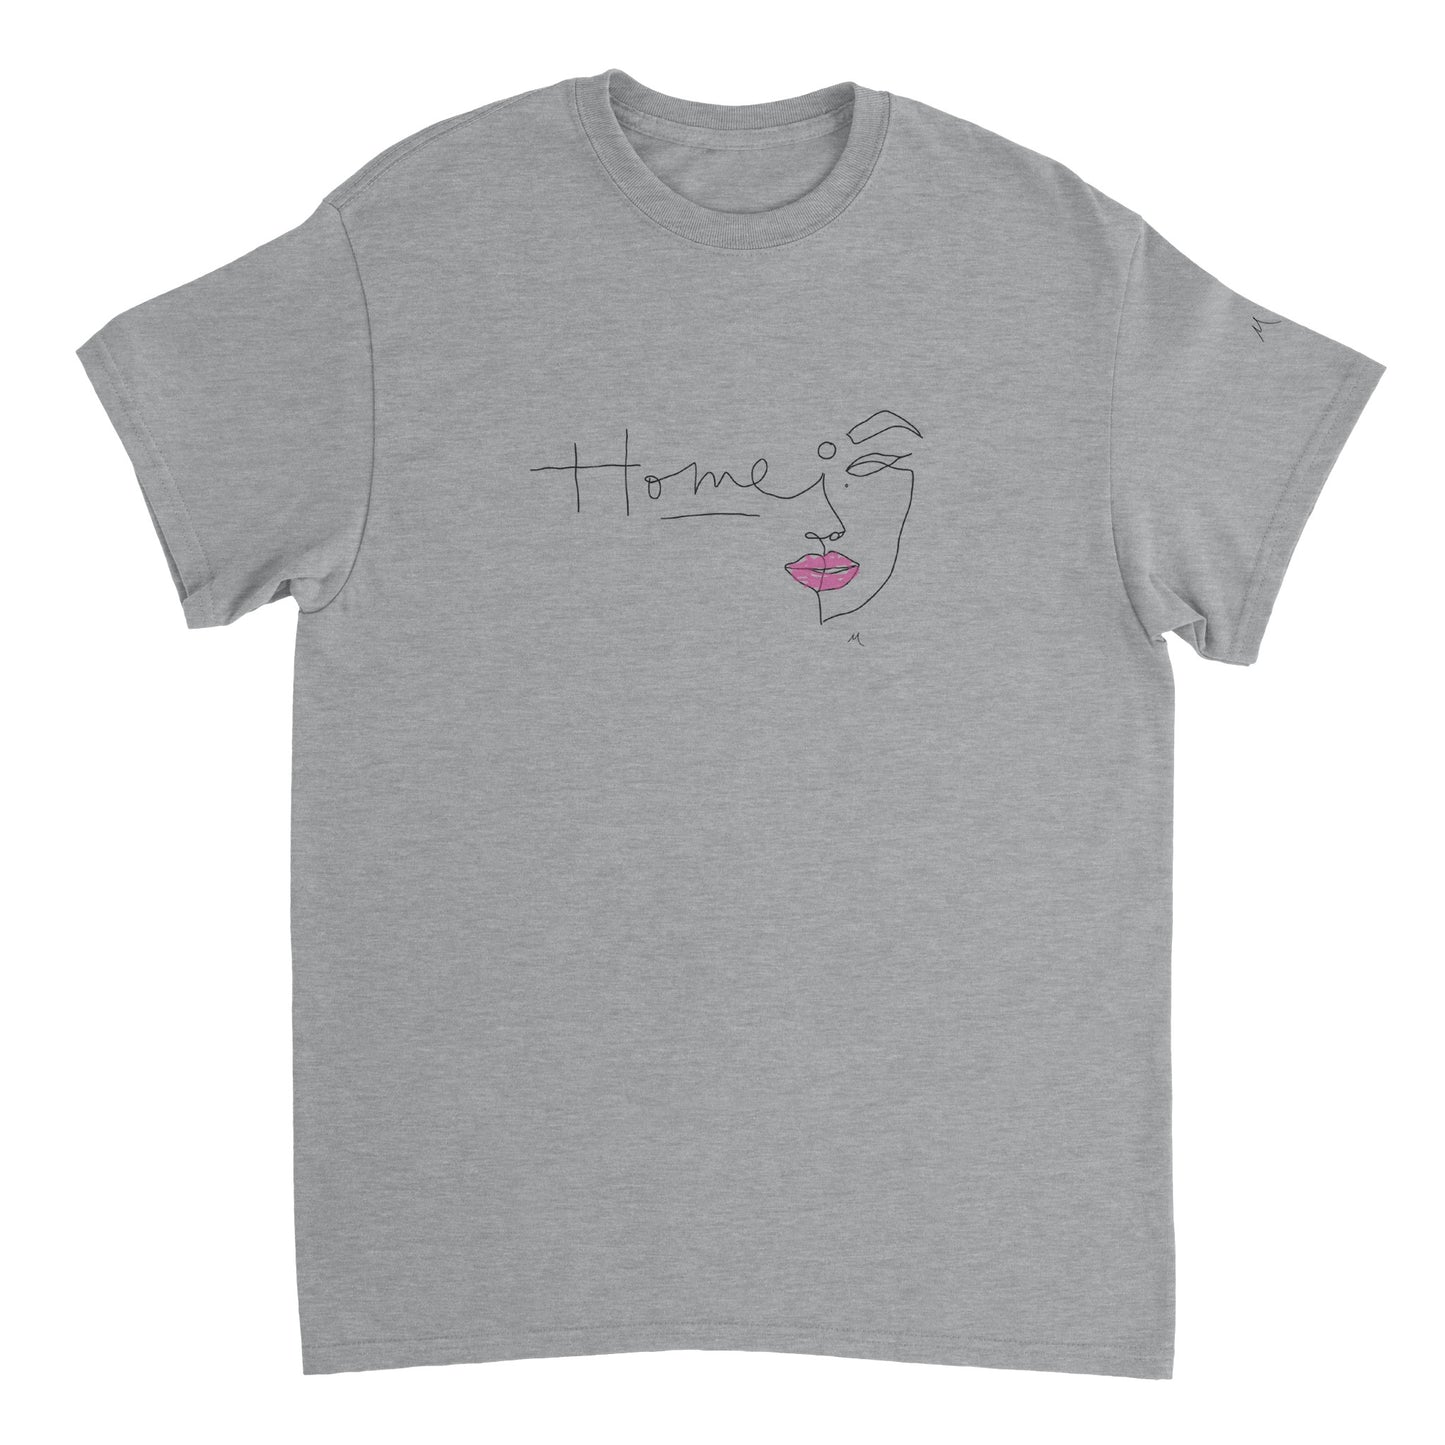 Home Rose, Line Art Shirt